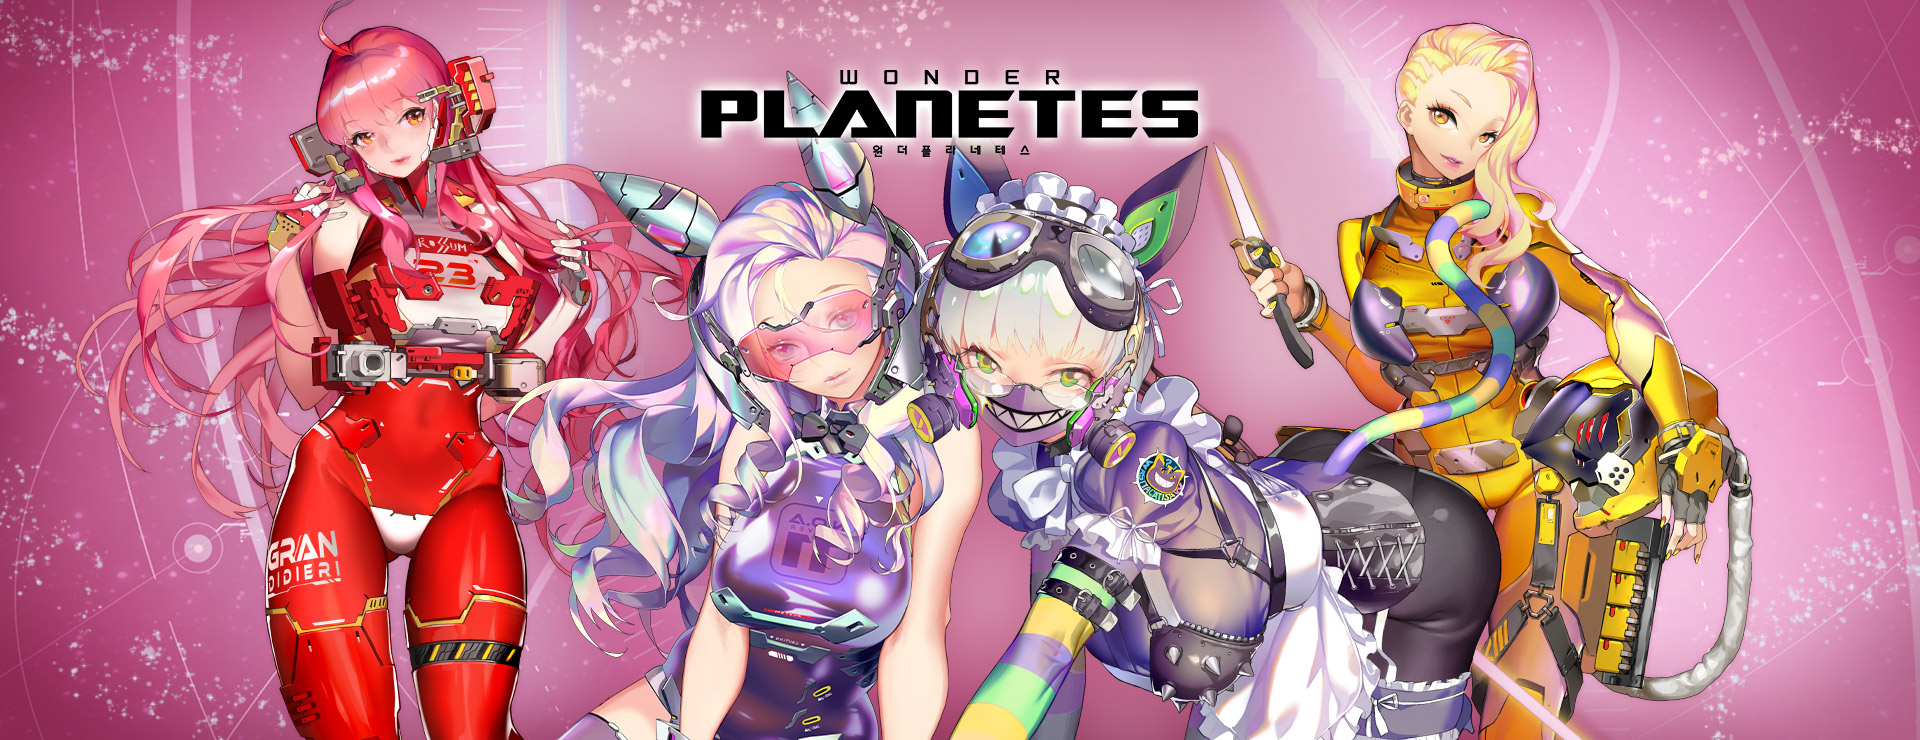 Wonder Planetes Game - Aventura Acción Juego